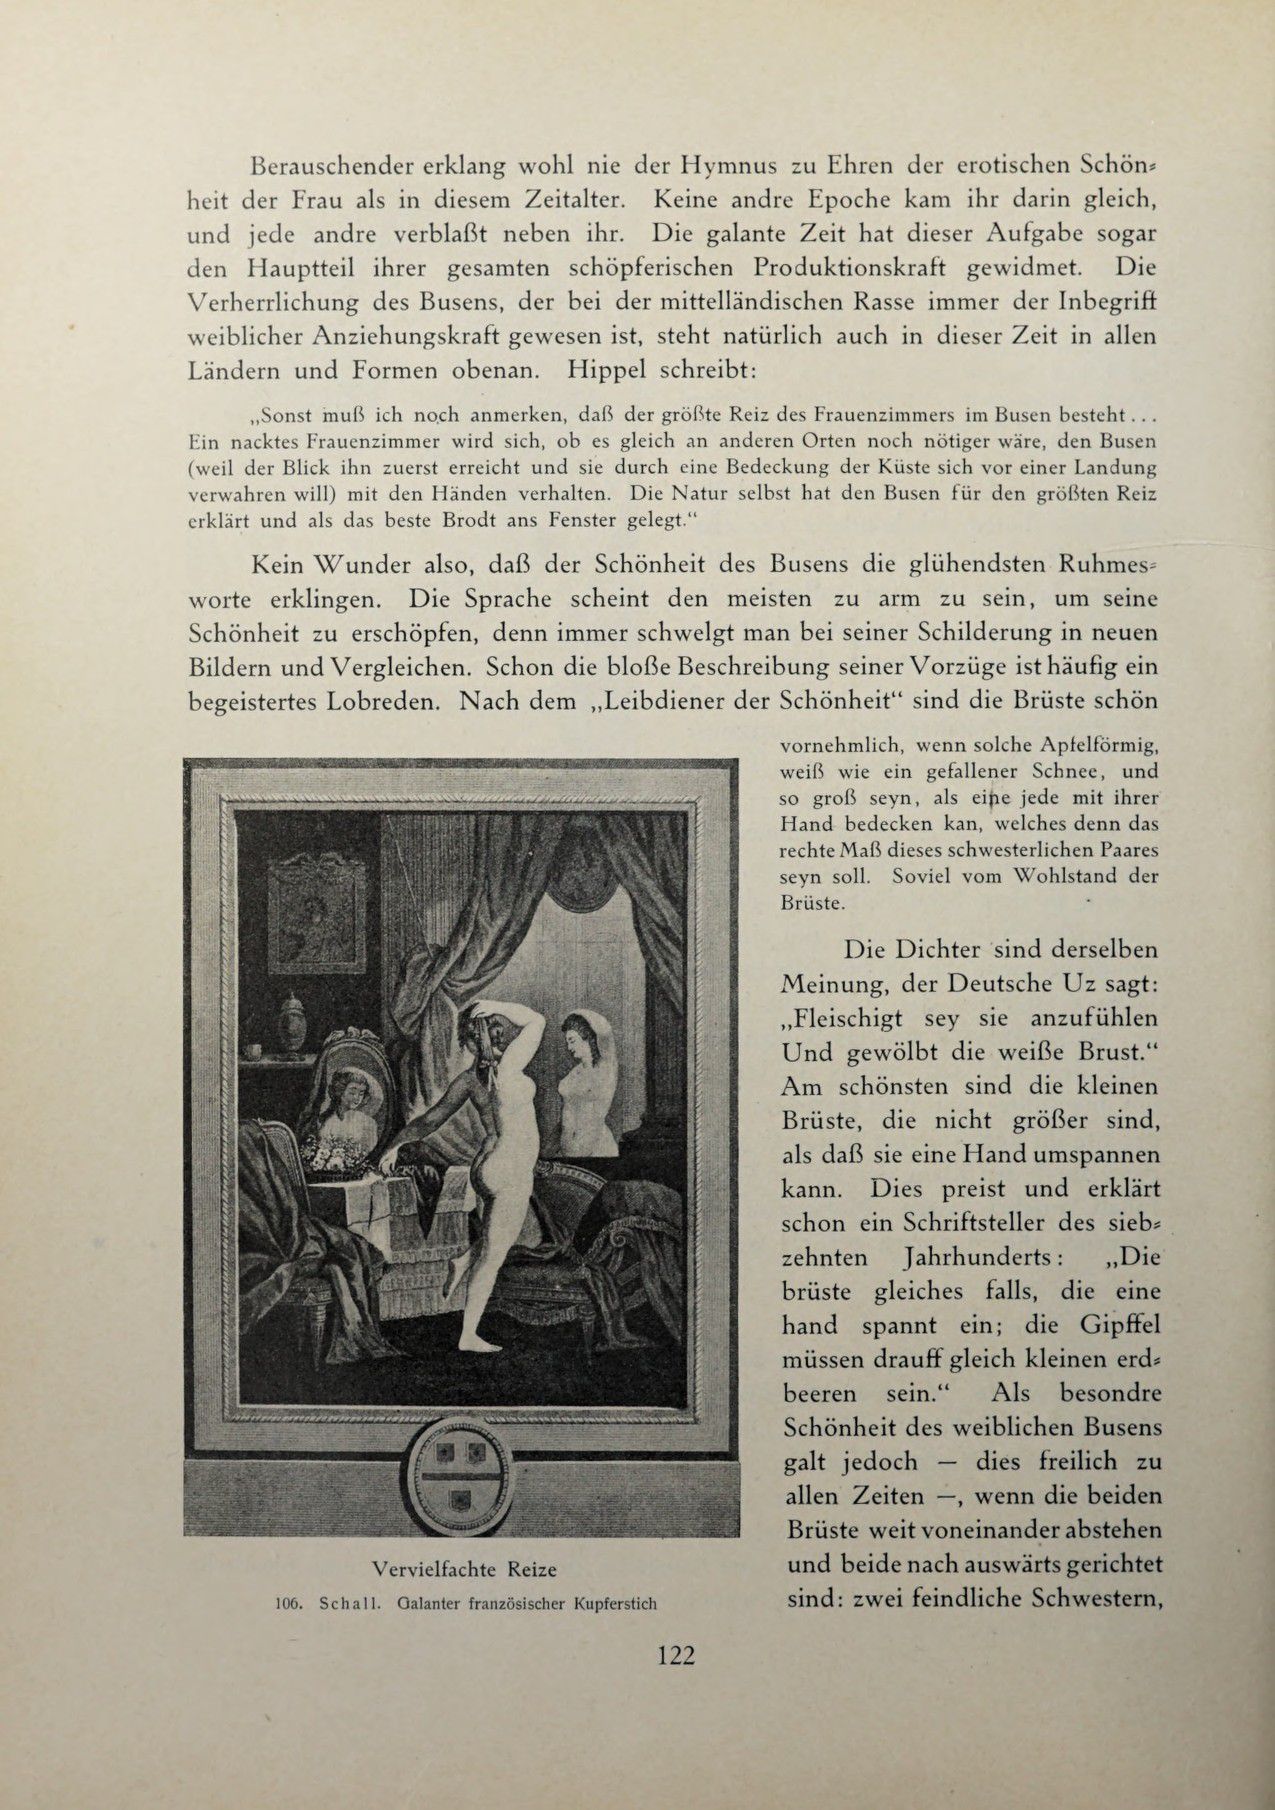 [Eduard Fuchs] Illustrierte Sittengeschichte vom Mittelalter bis zur Gegenwart: Bd. 2. and Ergänzungsband. Die galante Zeit [German] 187